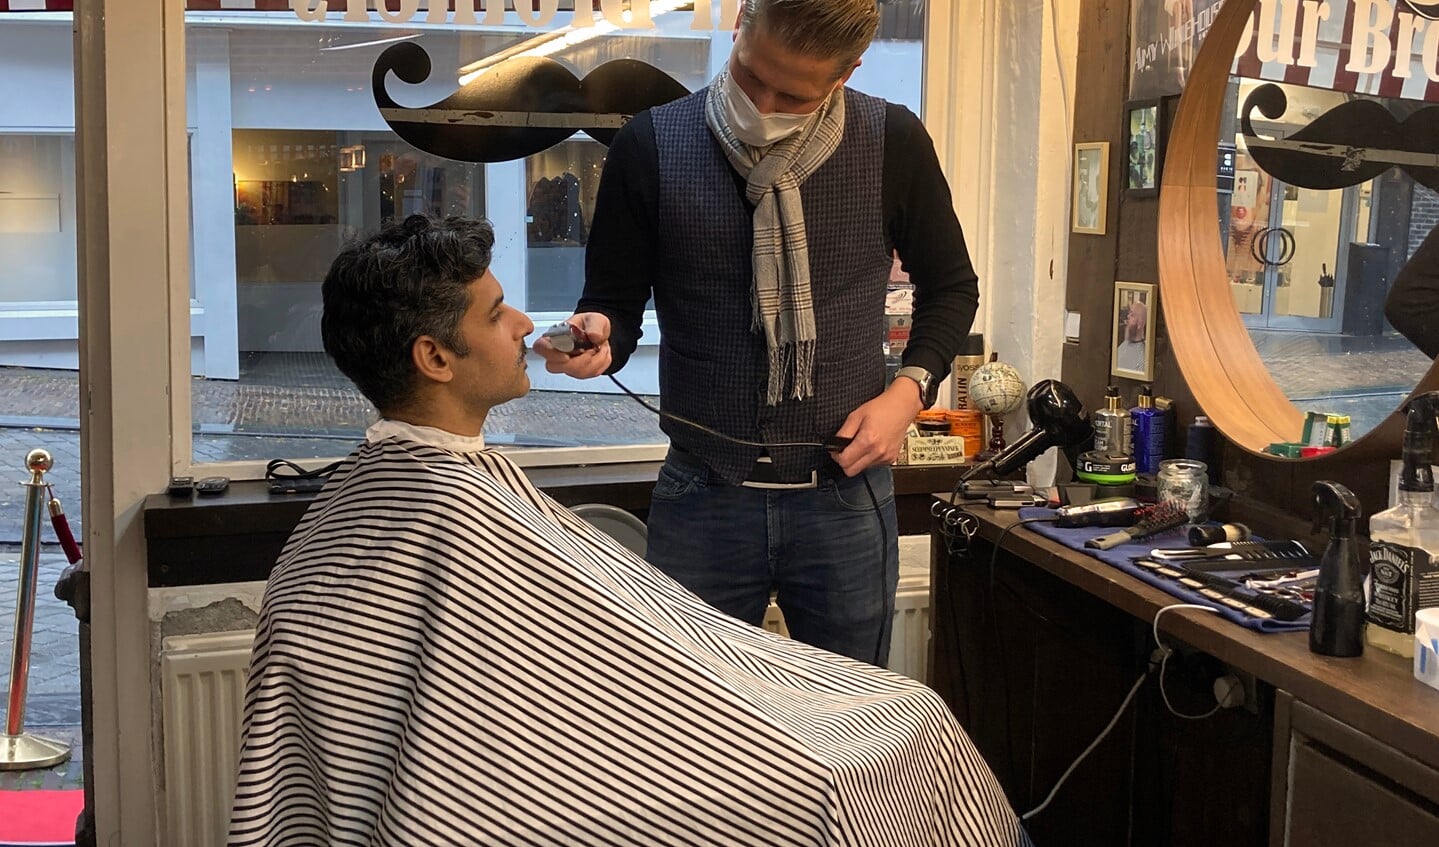 De snor van oncoloog Niven Mehra wordt vakkundig afgeschoren door de professionals van Barbershop Four Brothers.